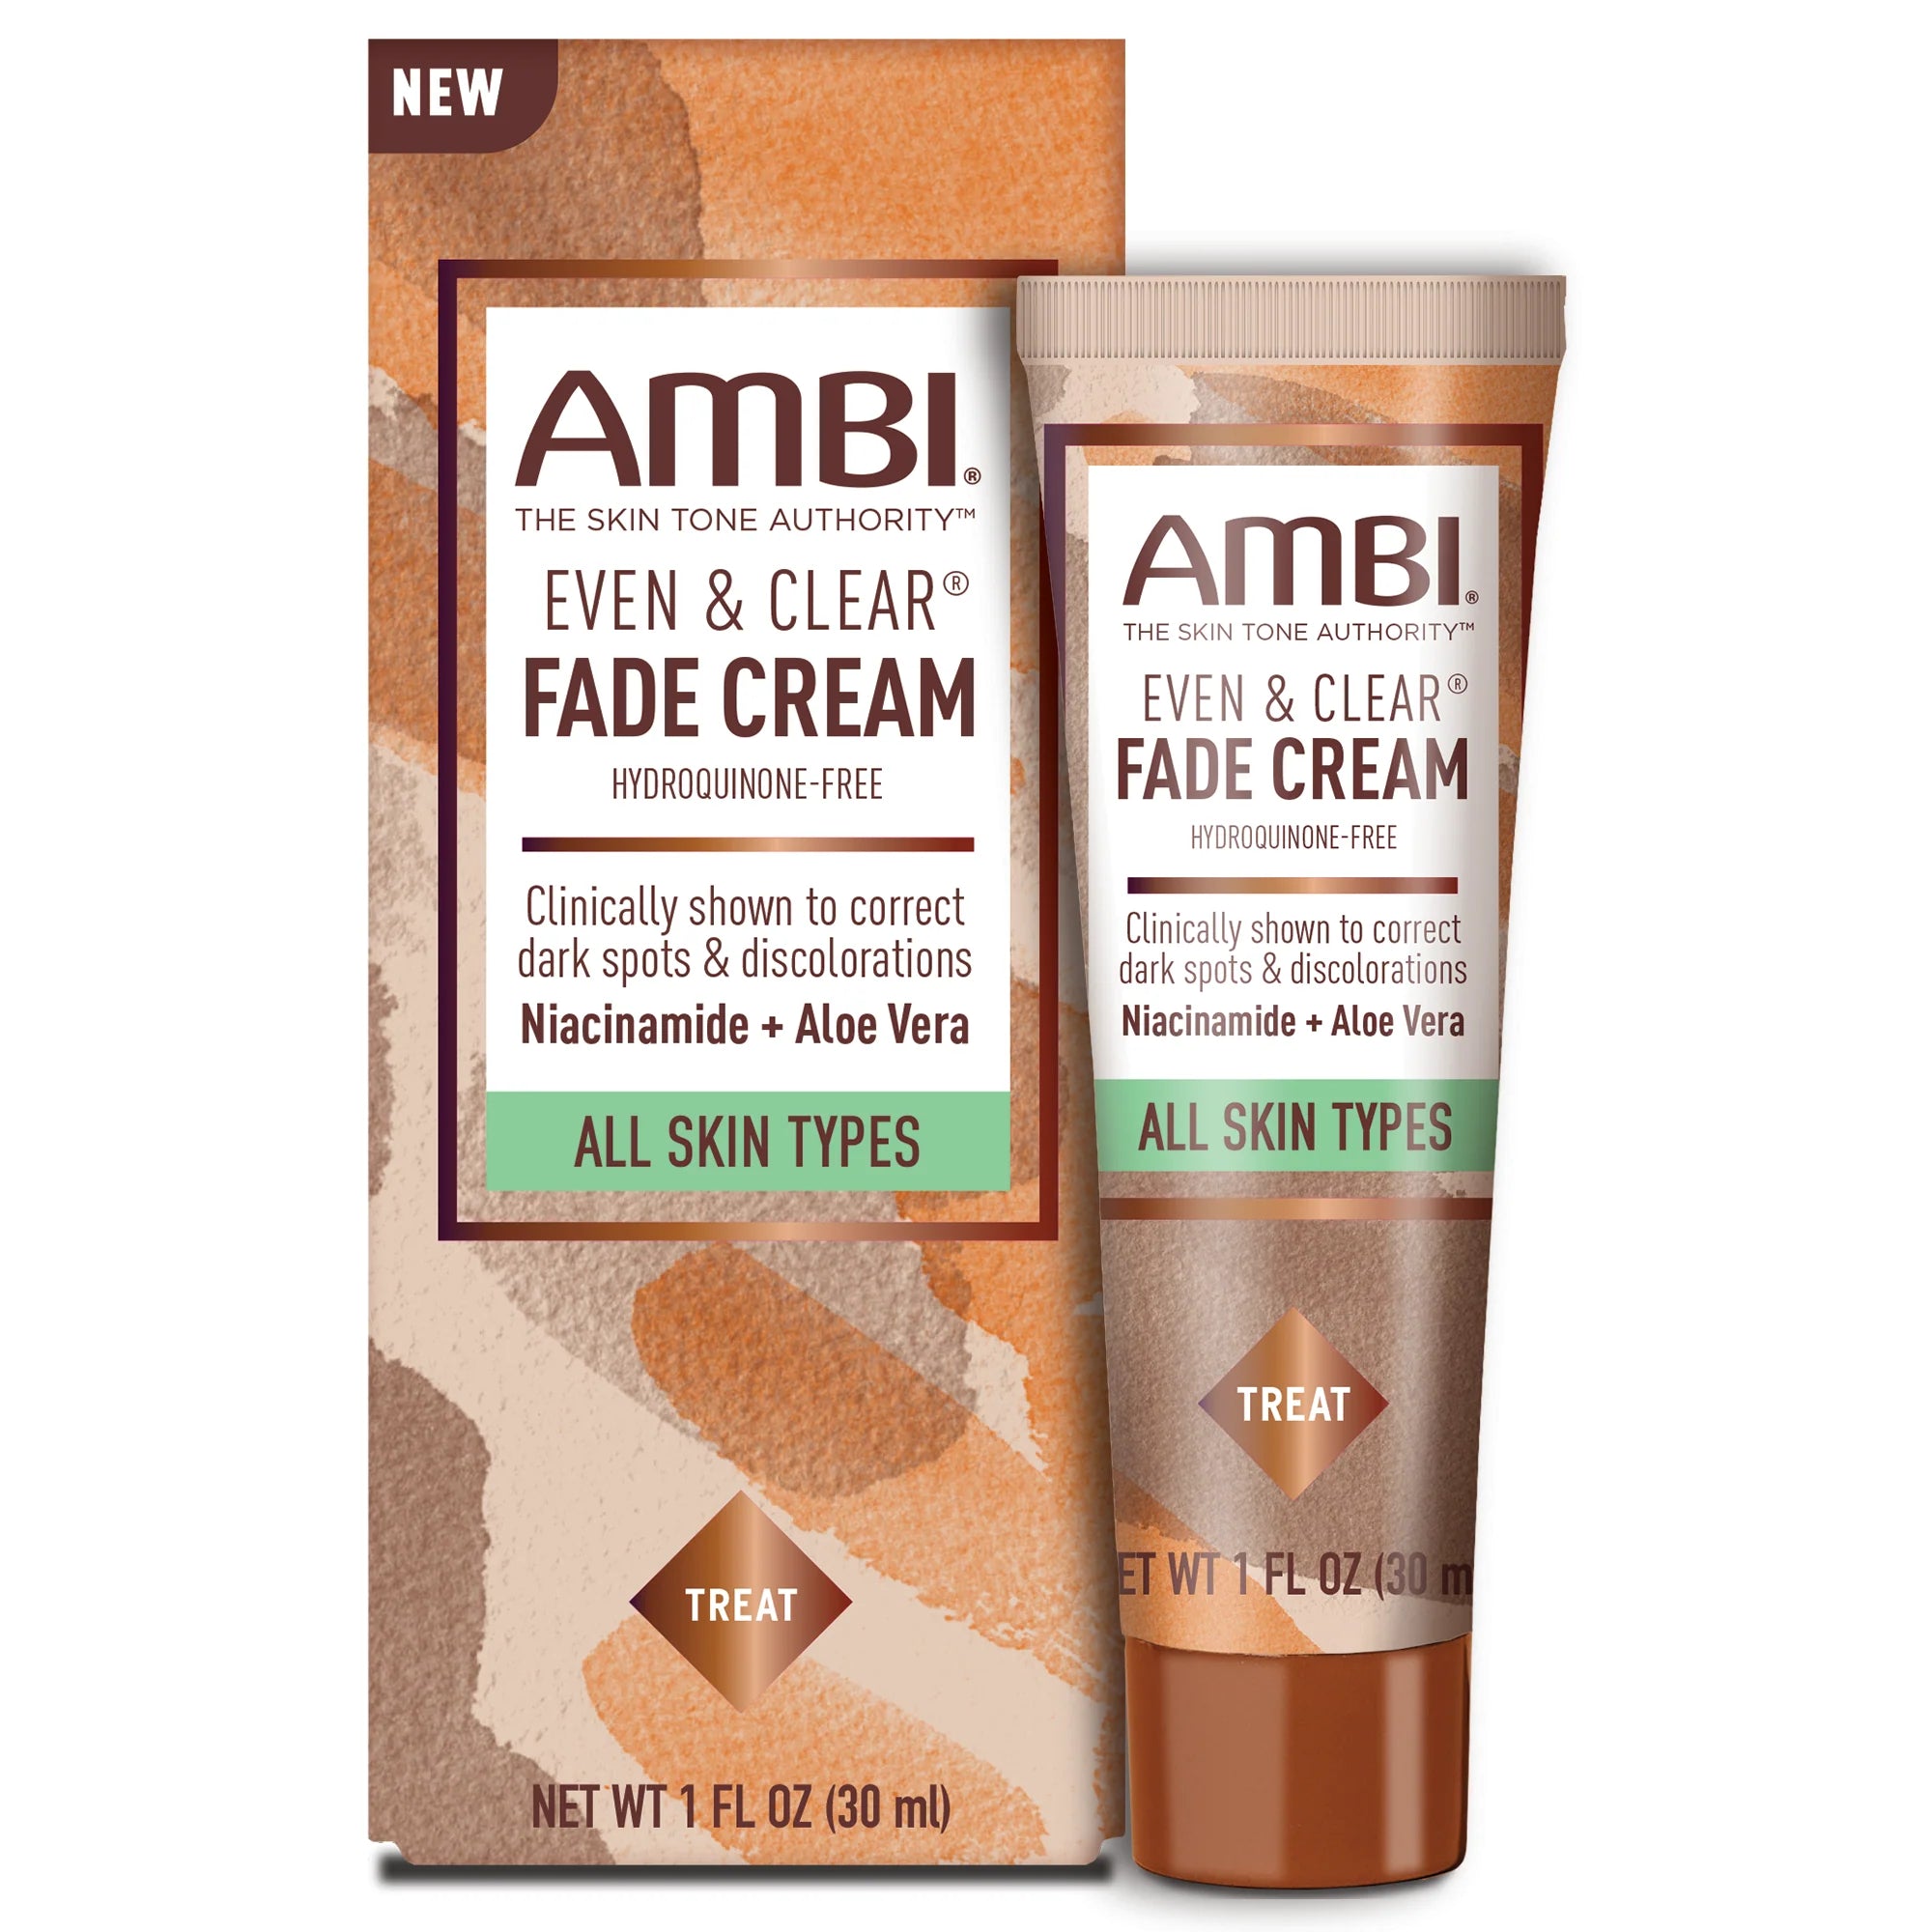 AMBI Even & Clear Fade Cream Hydroquinone-Free 1oz